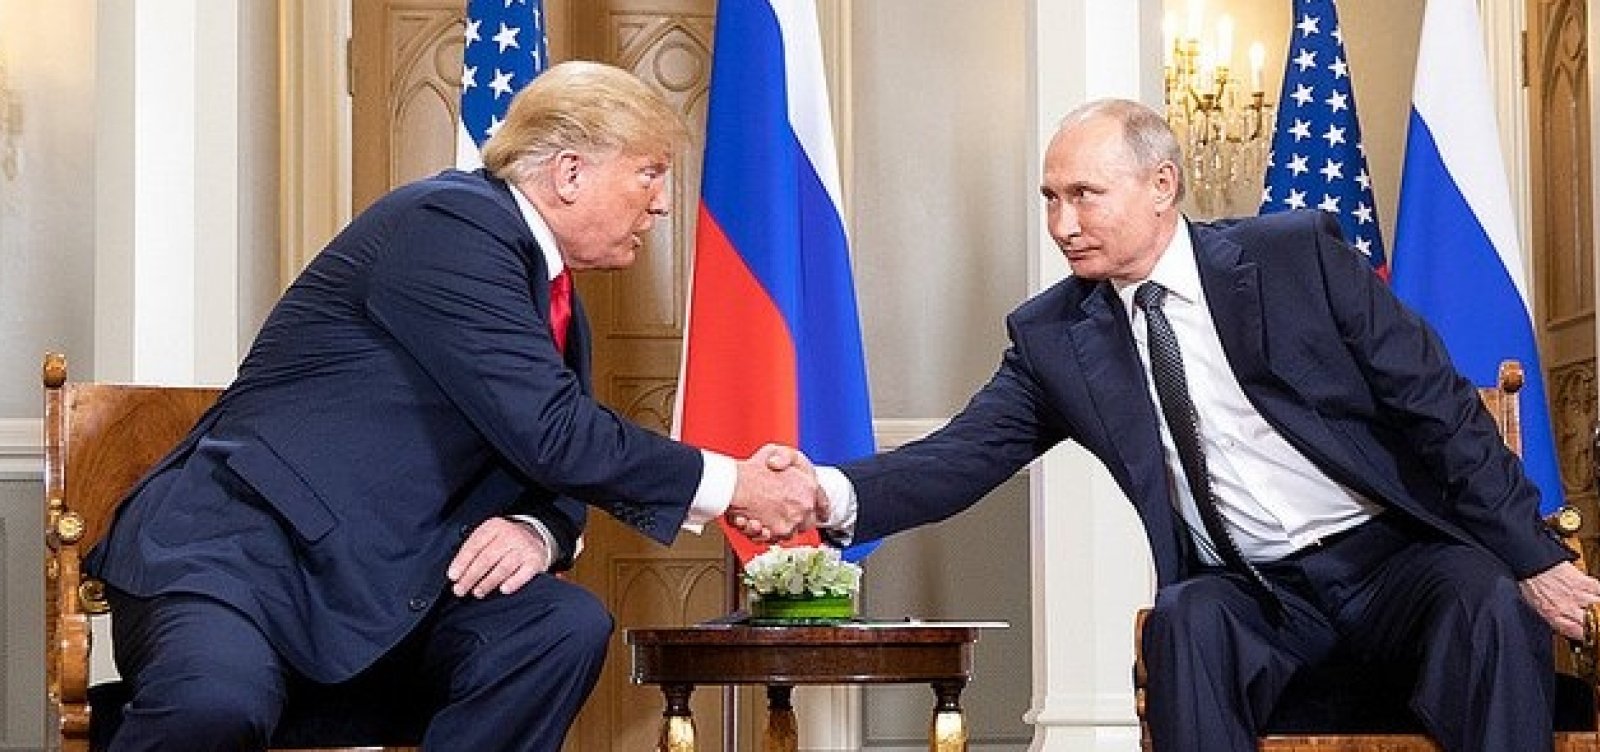 Trump e Putin voltam a negar interferência russa nas últimas eleições dos EUA